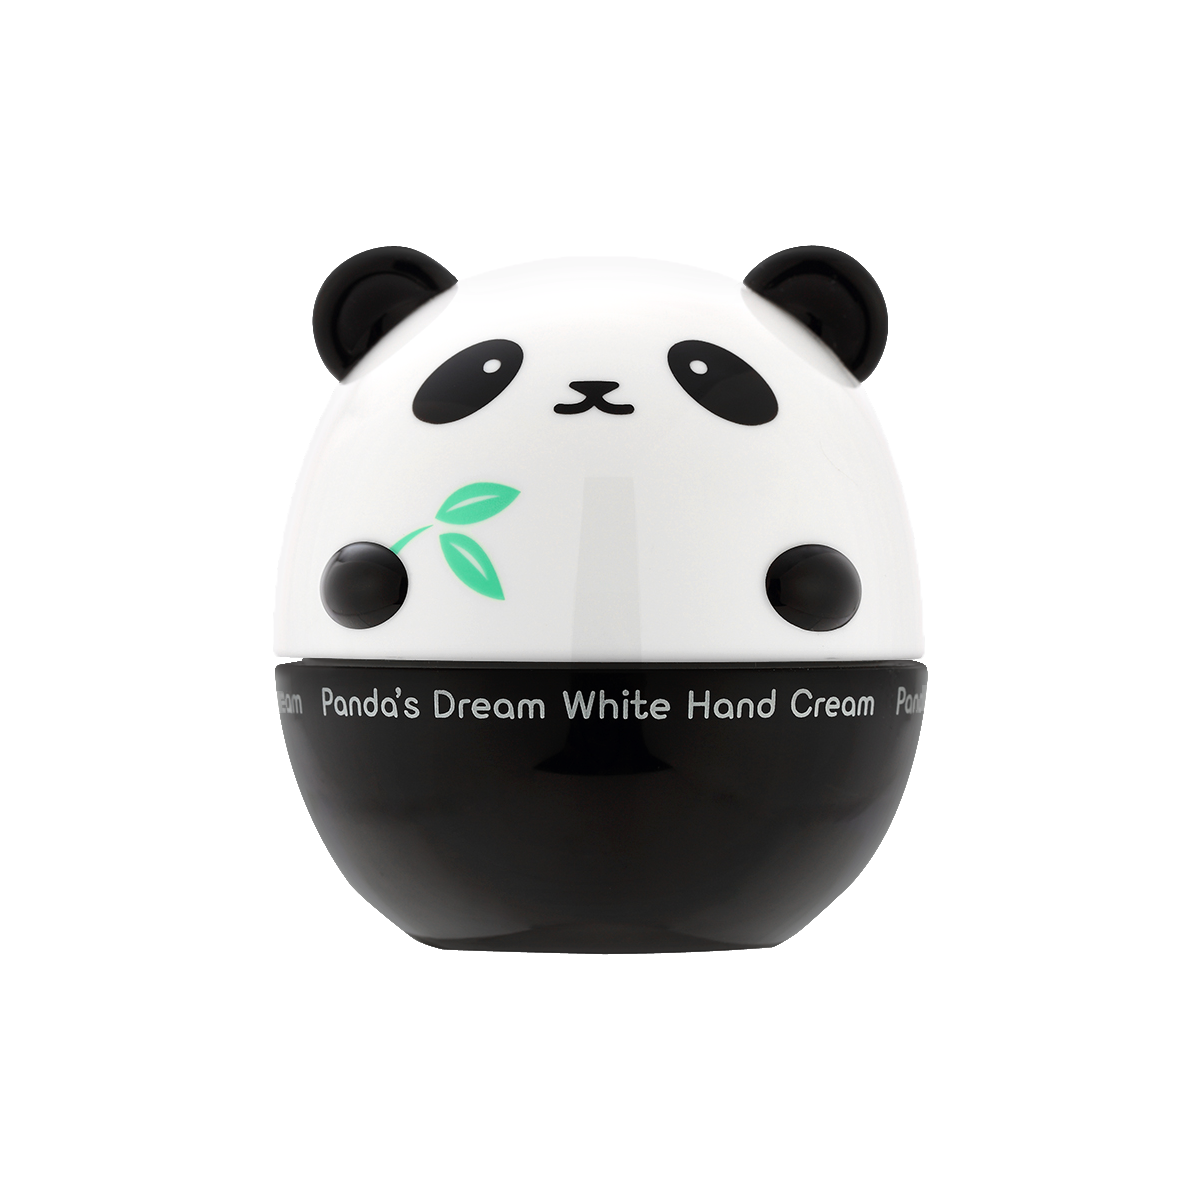 Panda's Dream Hand Cream